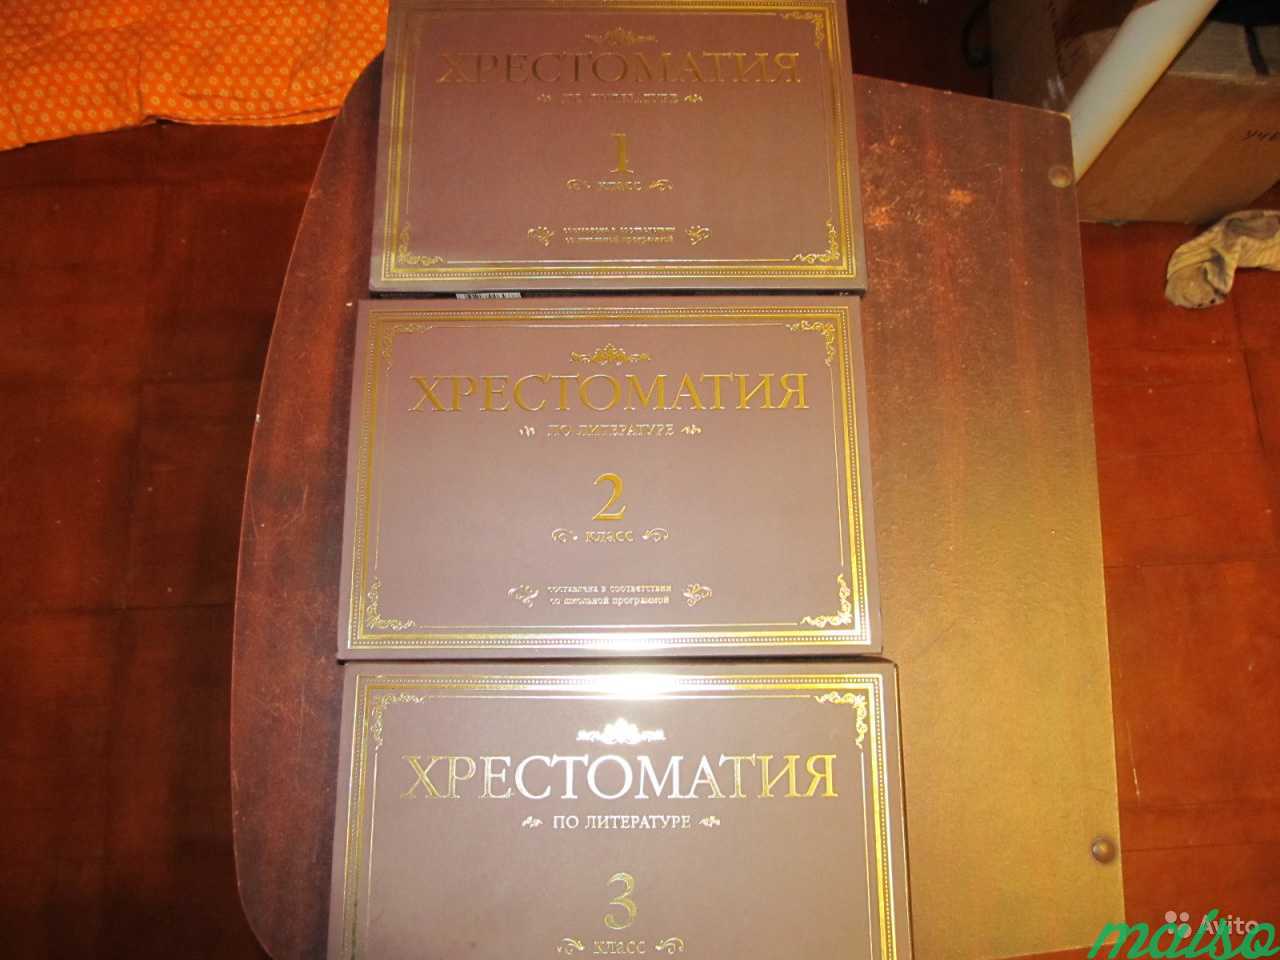 Диски Хрестоматия по литературе за 1, 2, 3 класс в Санкт-Петербурге. Фото 3